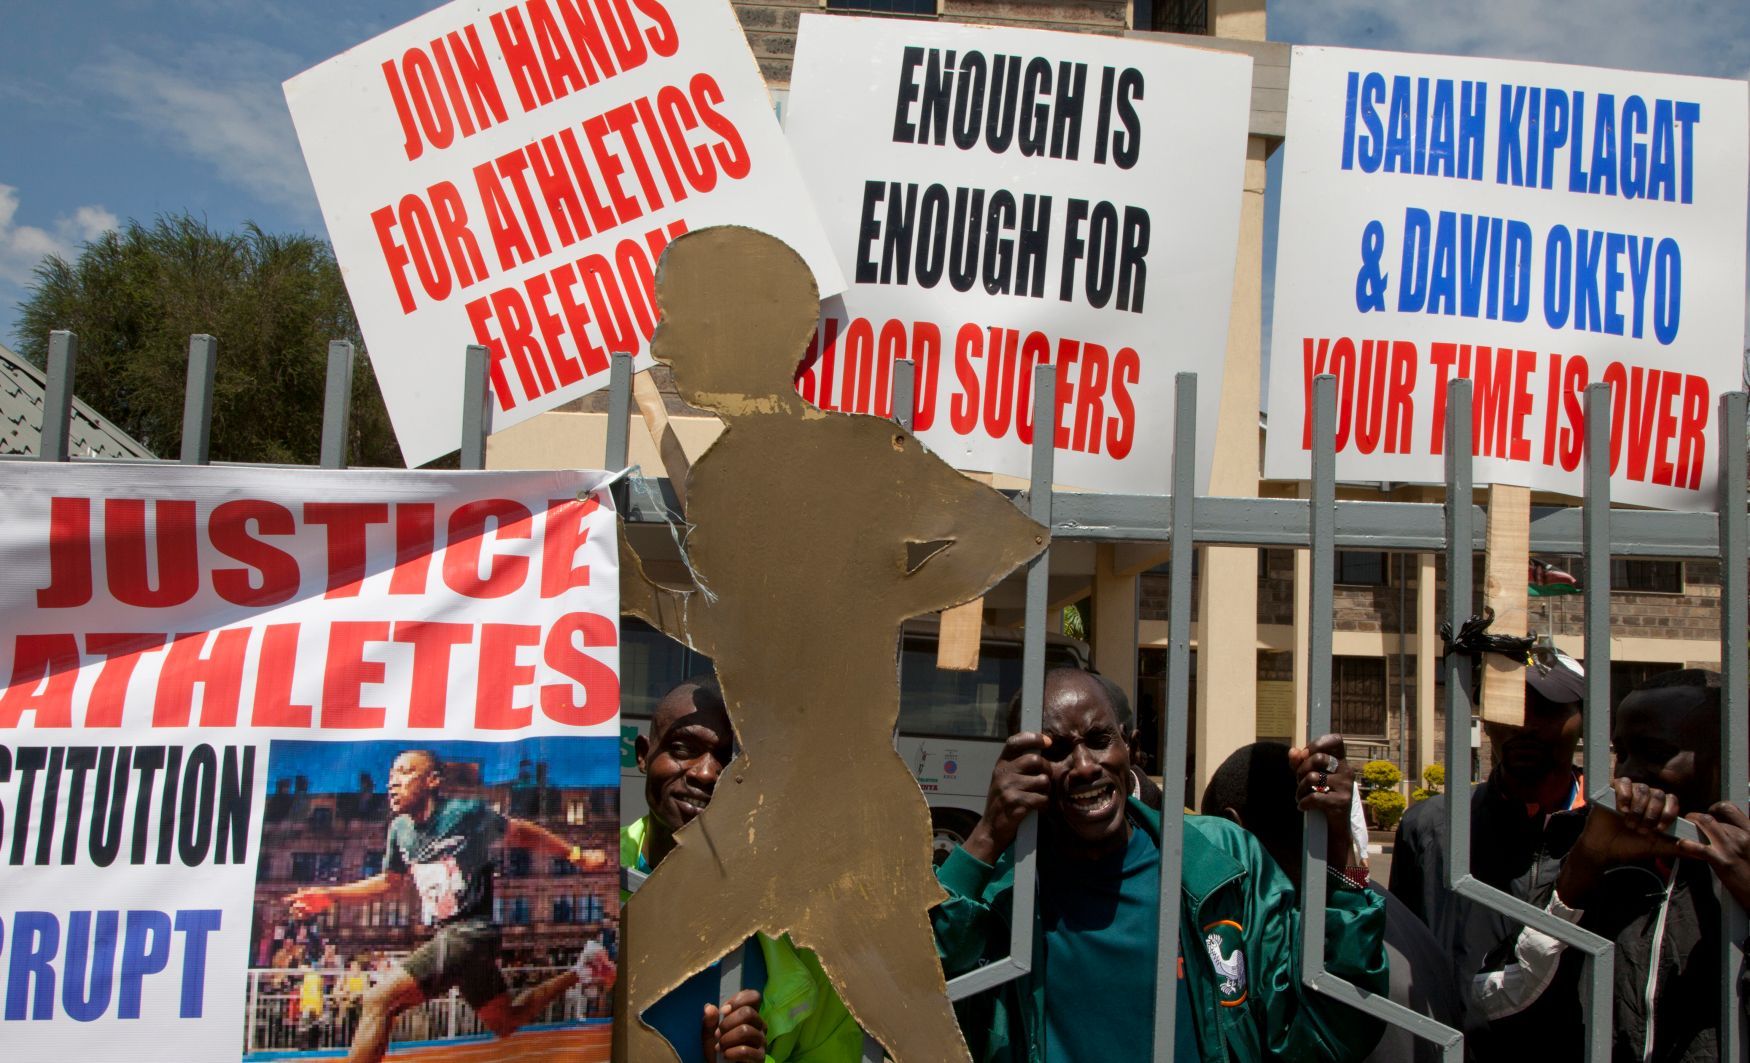 Protesty atletů Keni